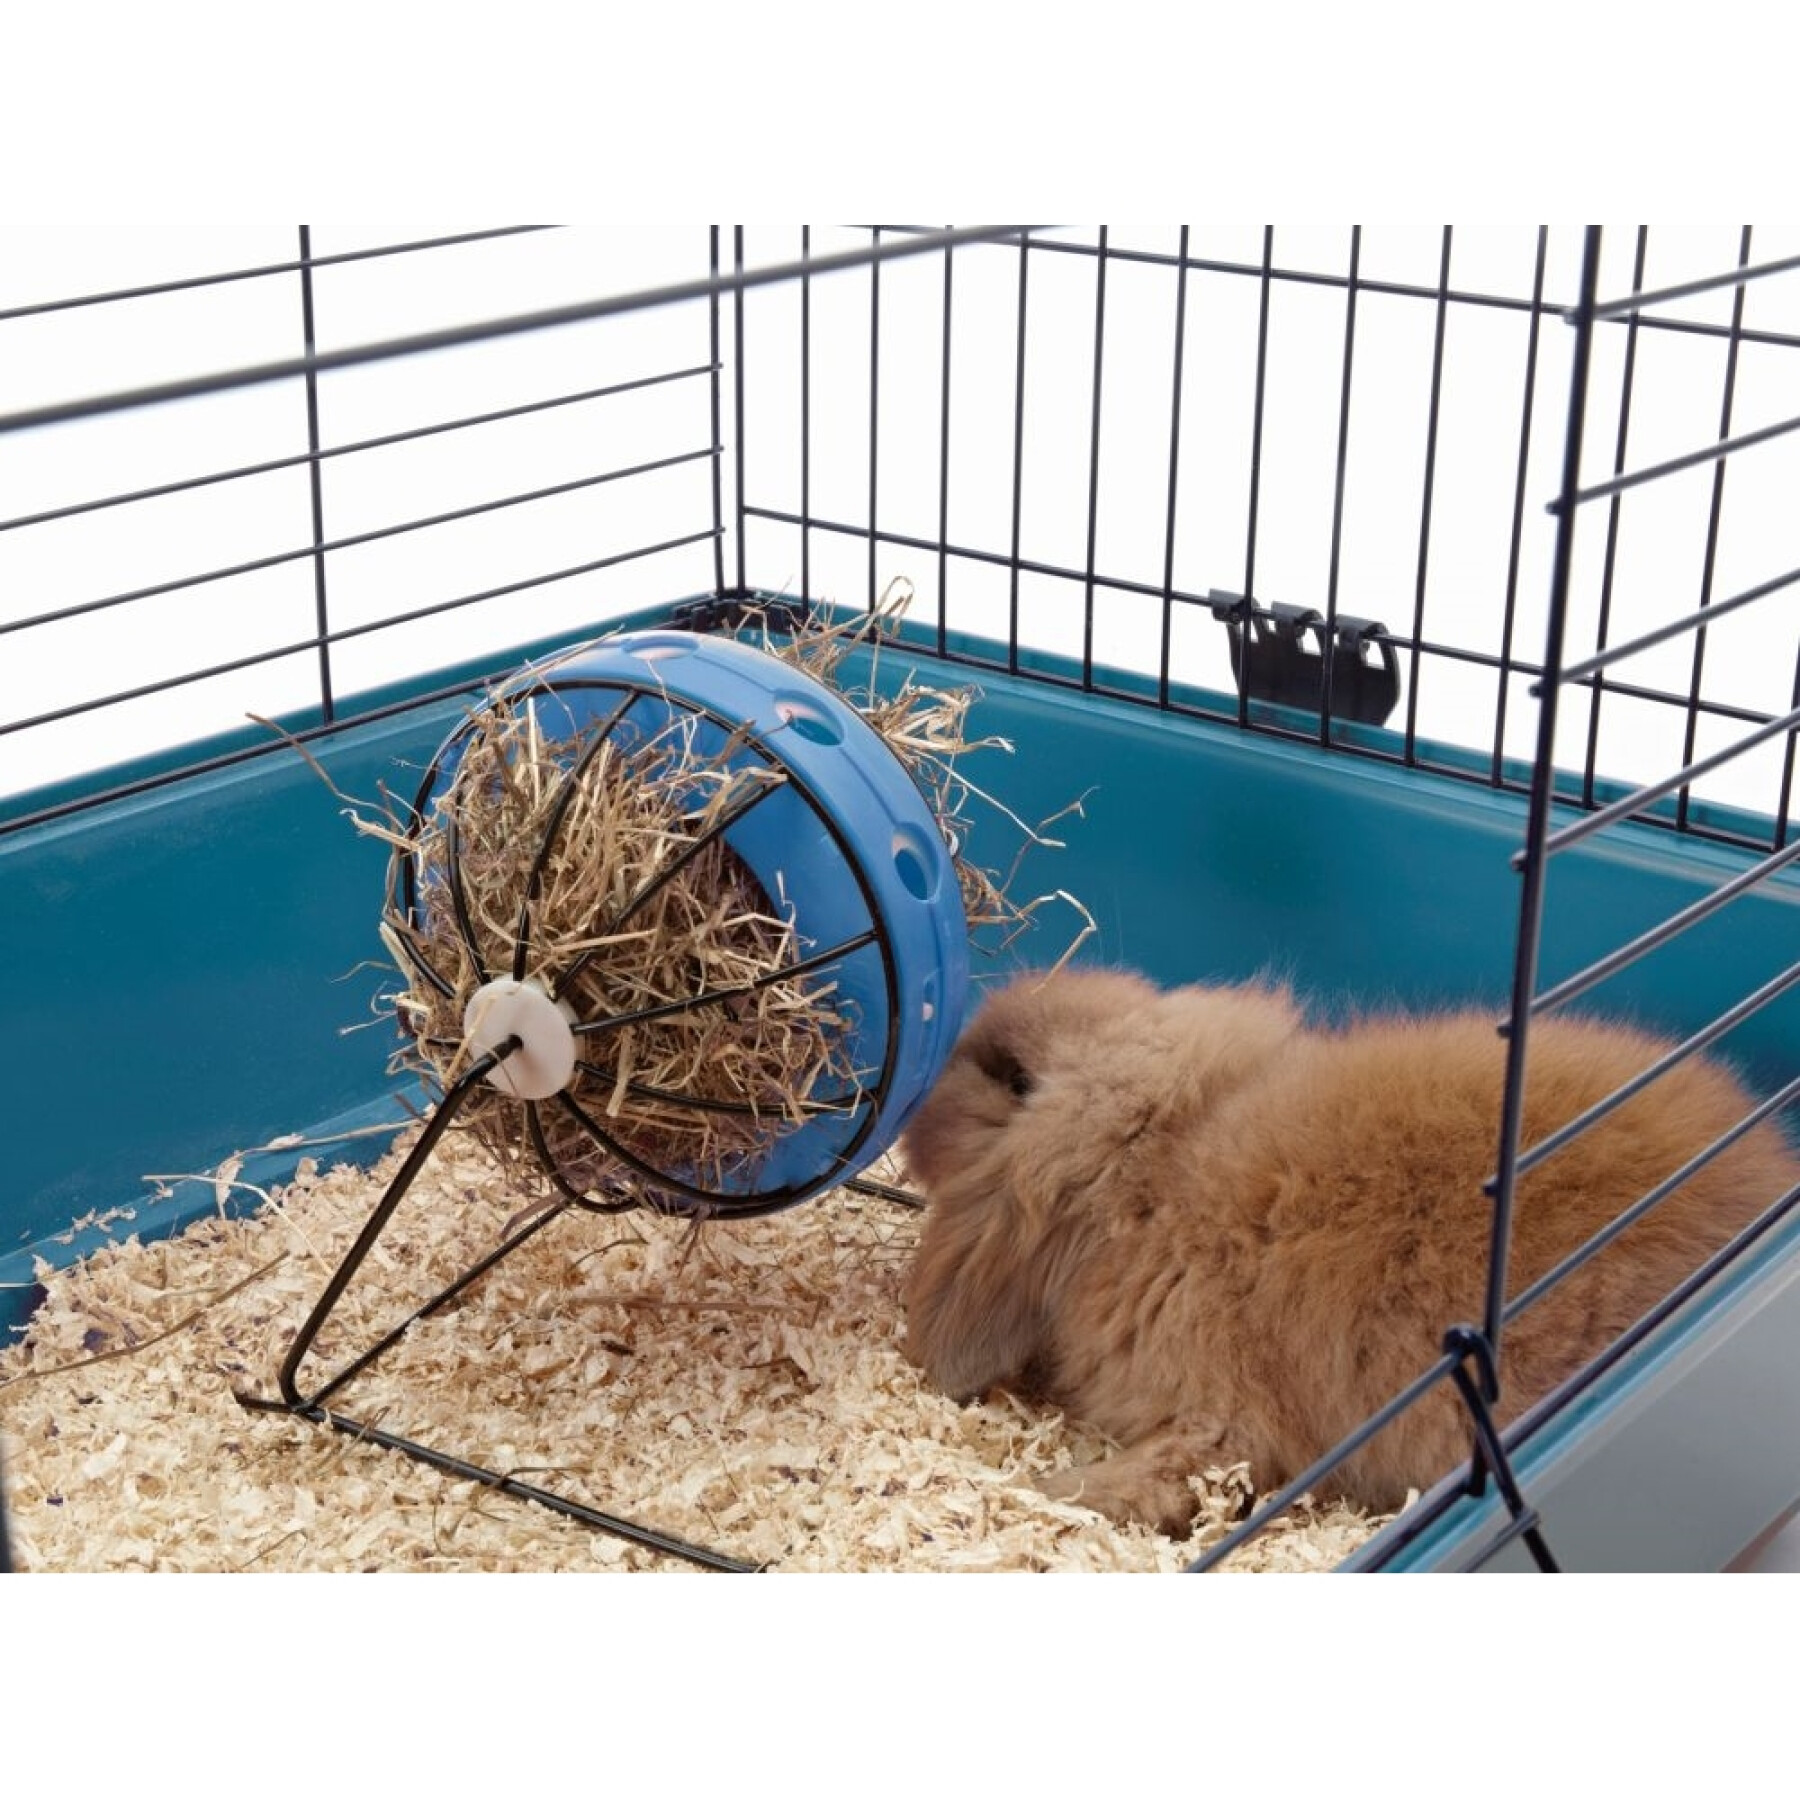 Bola de feno para roedores Nobby Pet Bunny Toy